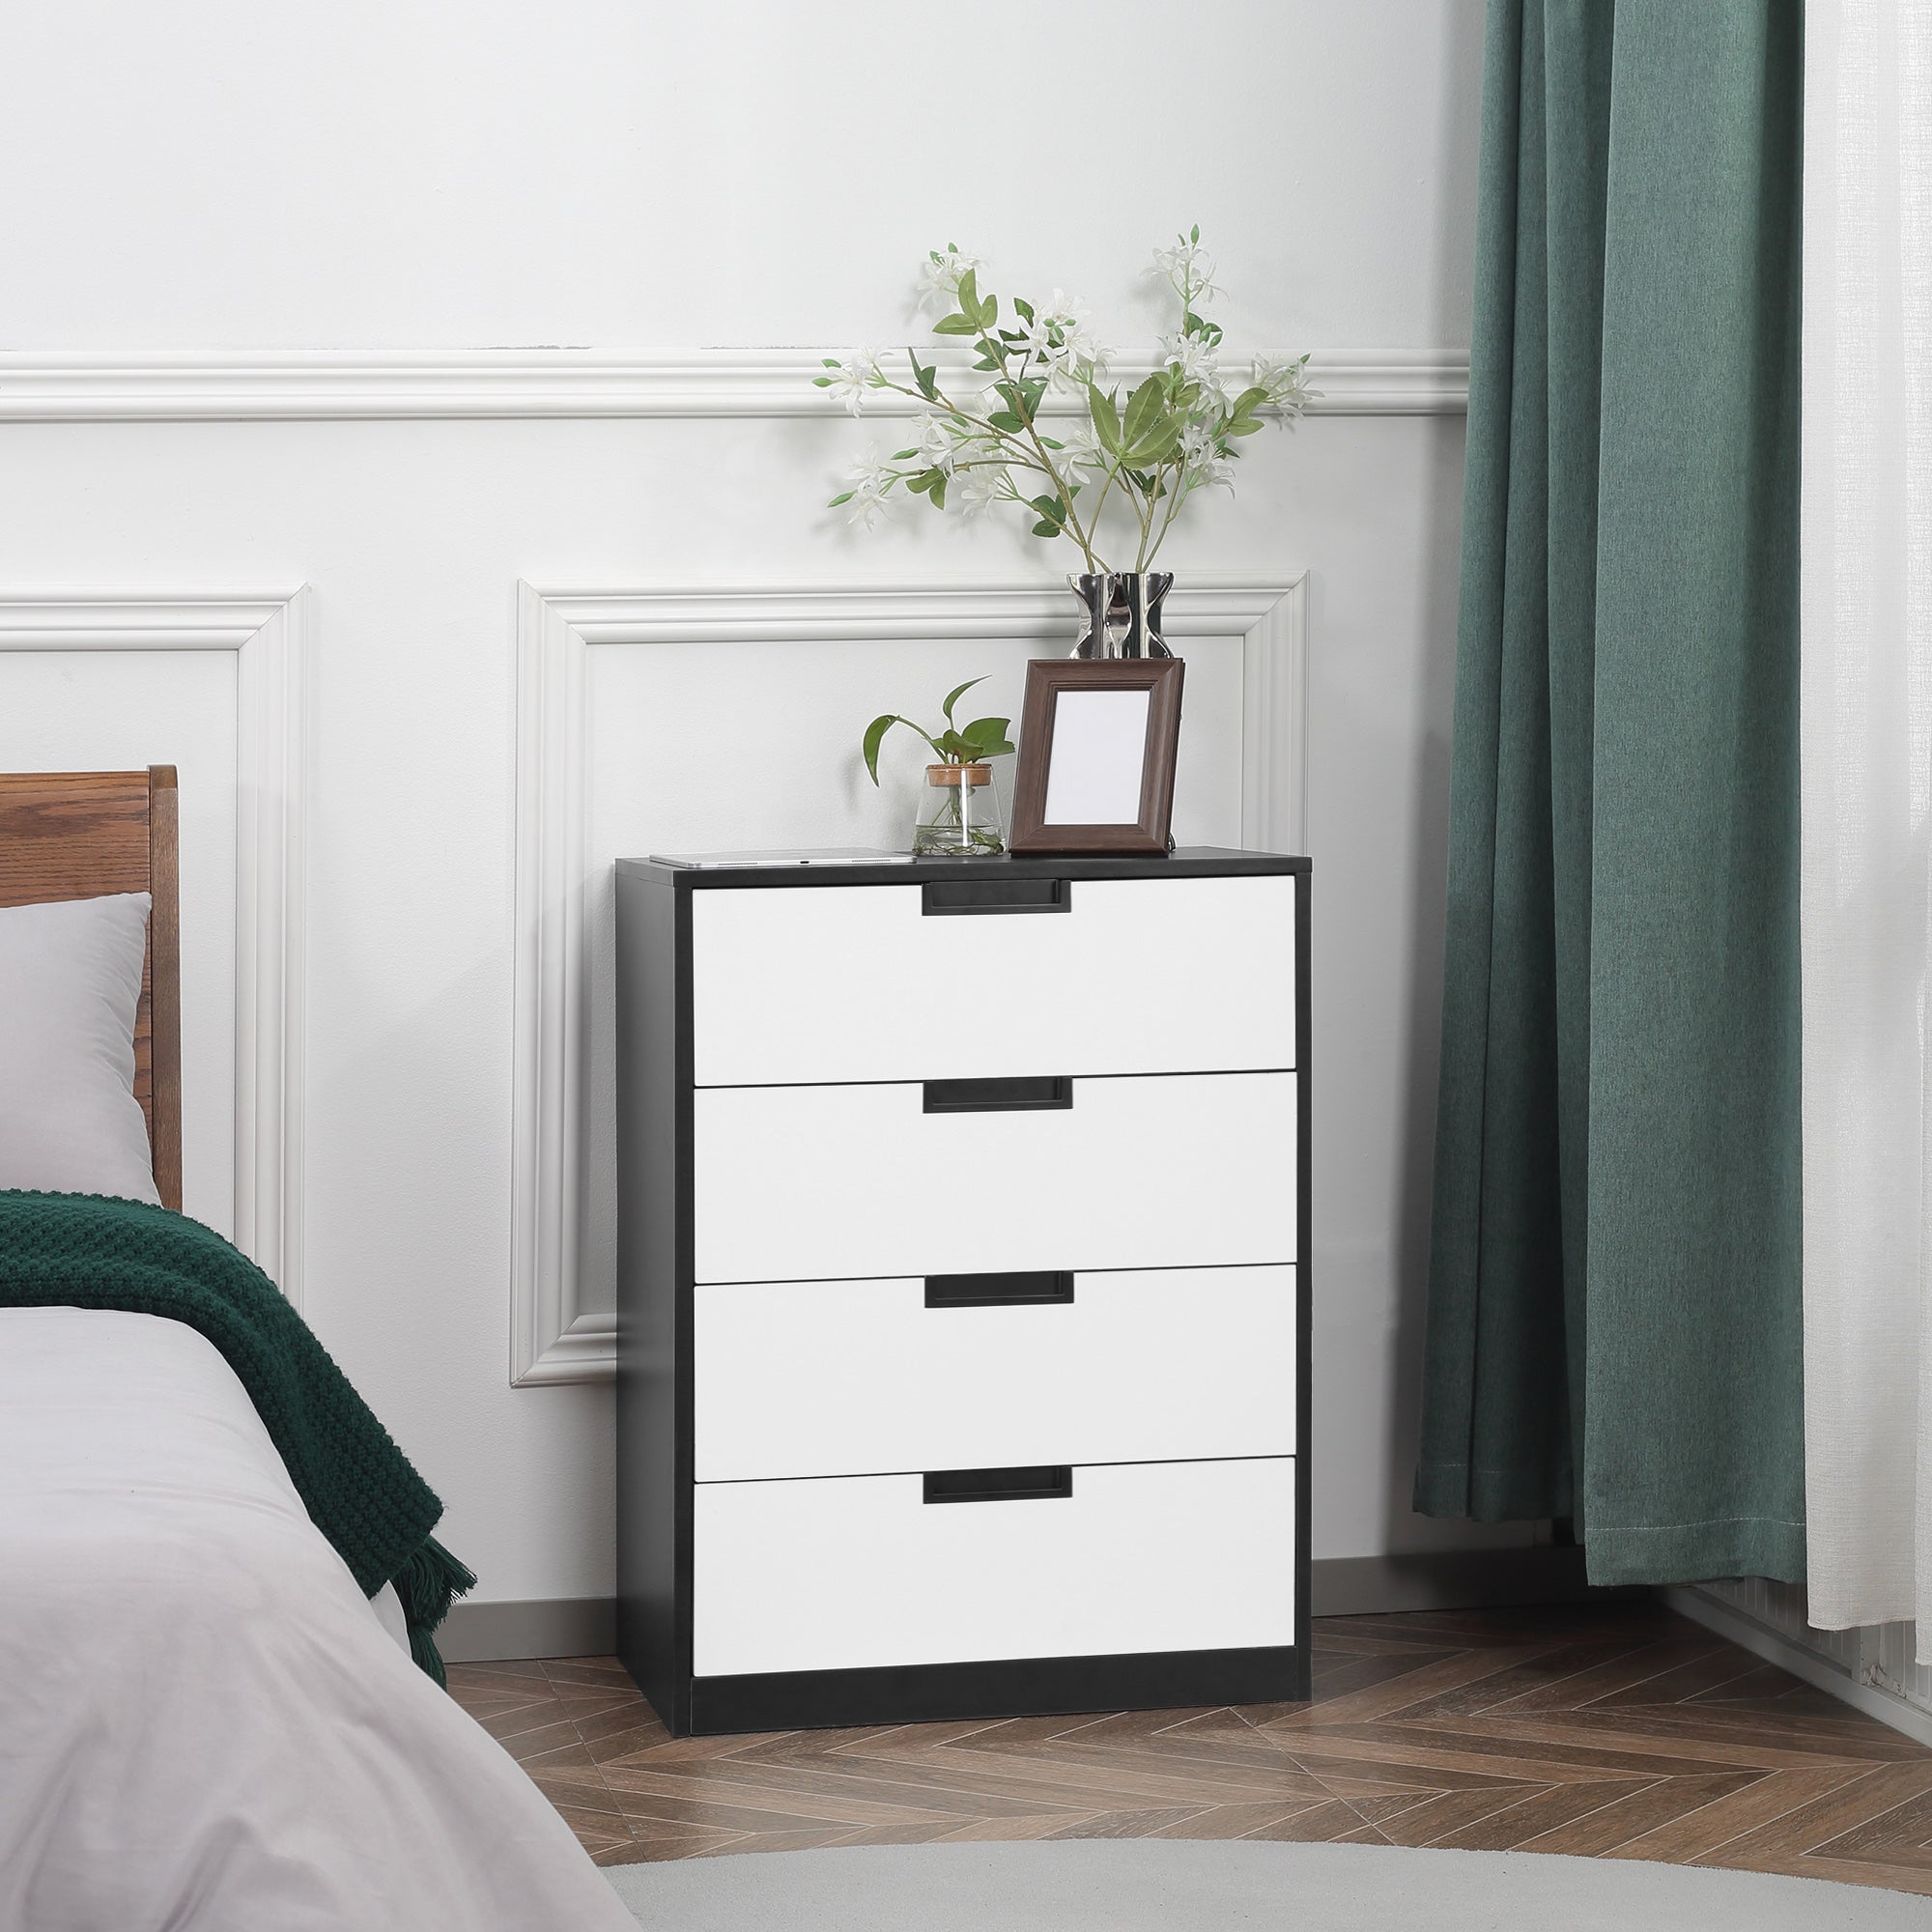 Drawer Chest, 4-Drawer Storage Cabinet Organiser for Bedroom, Living Room, 60cmx40cmx80cm, White and Black-1